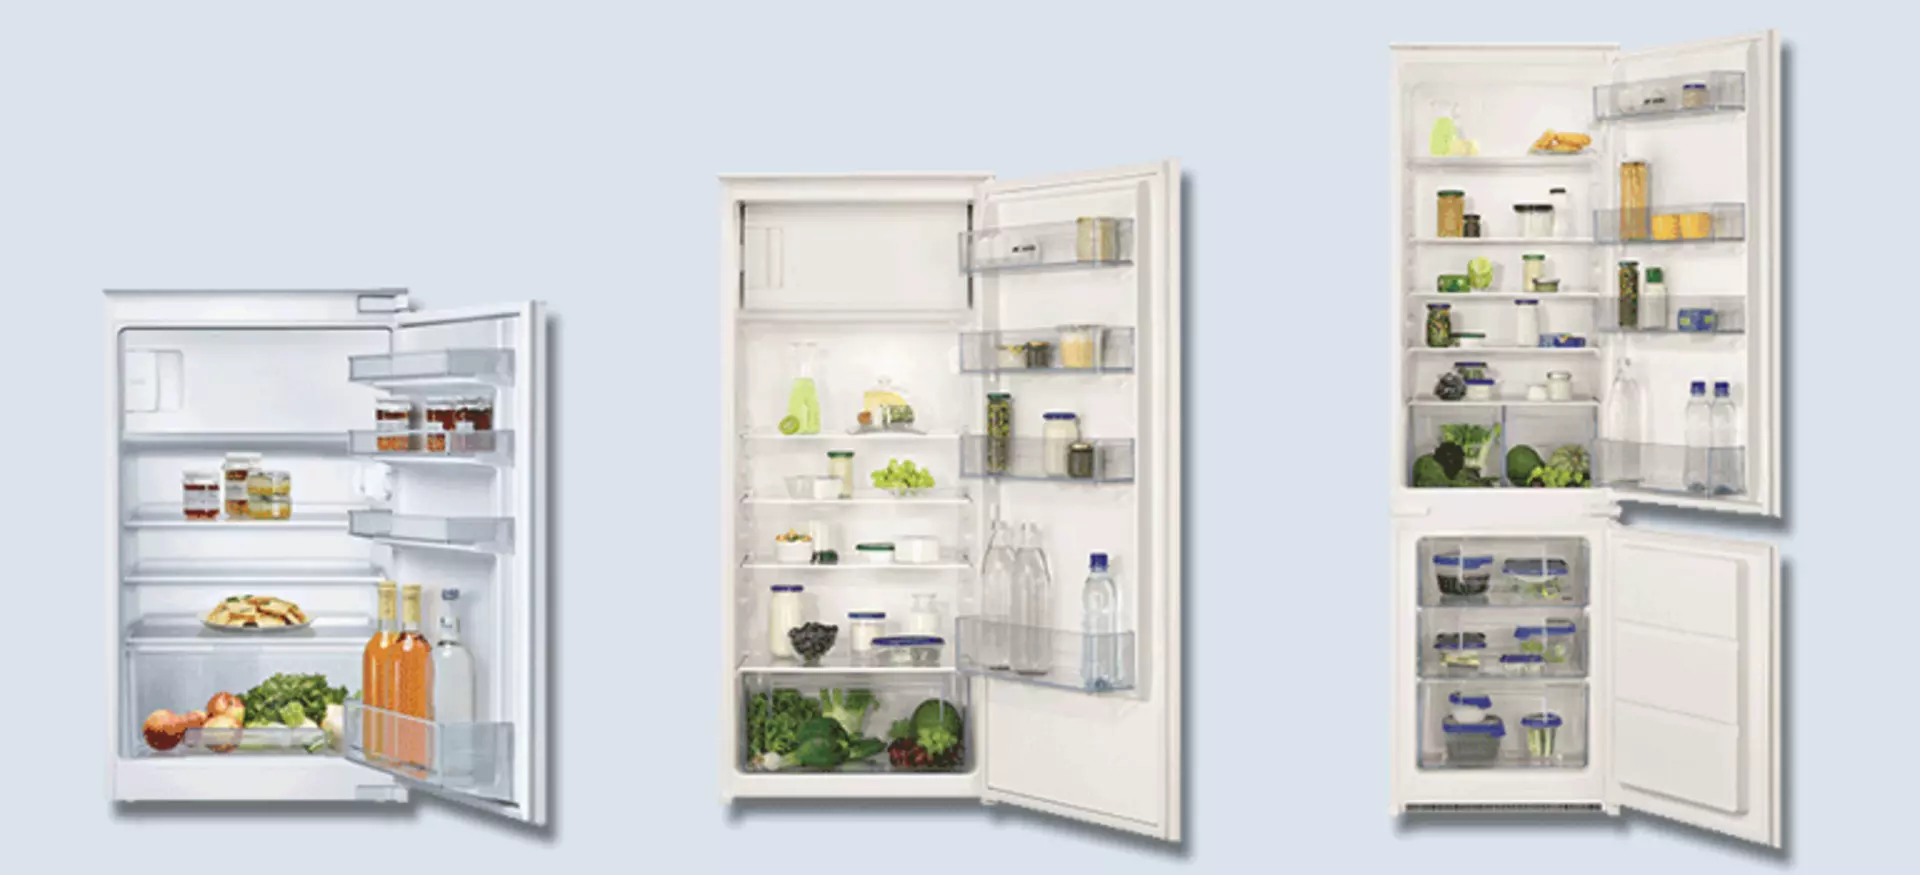 Einbaukühlschrank mit und ohne Gefrierfach, Kühl-Gefrierkombi oder  Gefrierschrank -  alle Gerätearten bei Möbel Inhofer